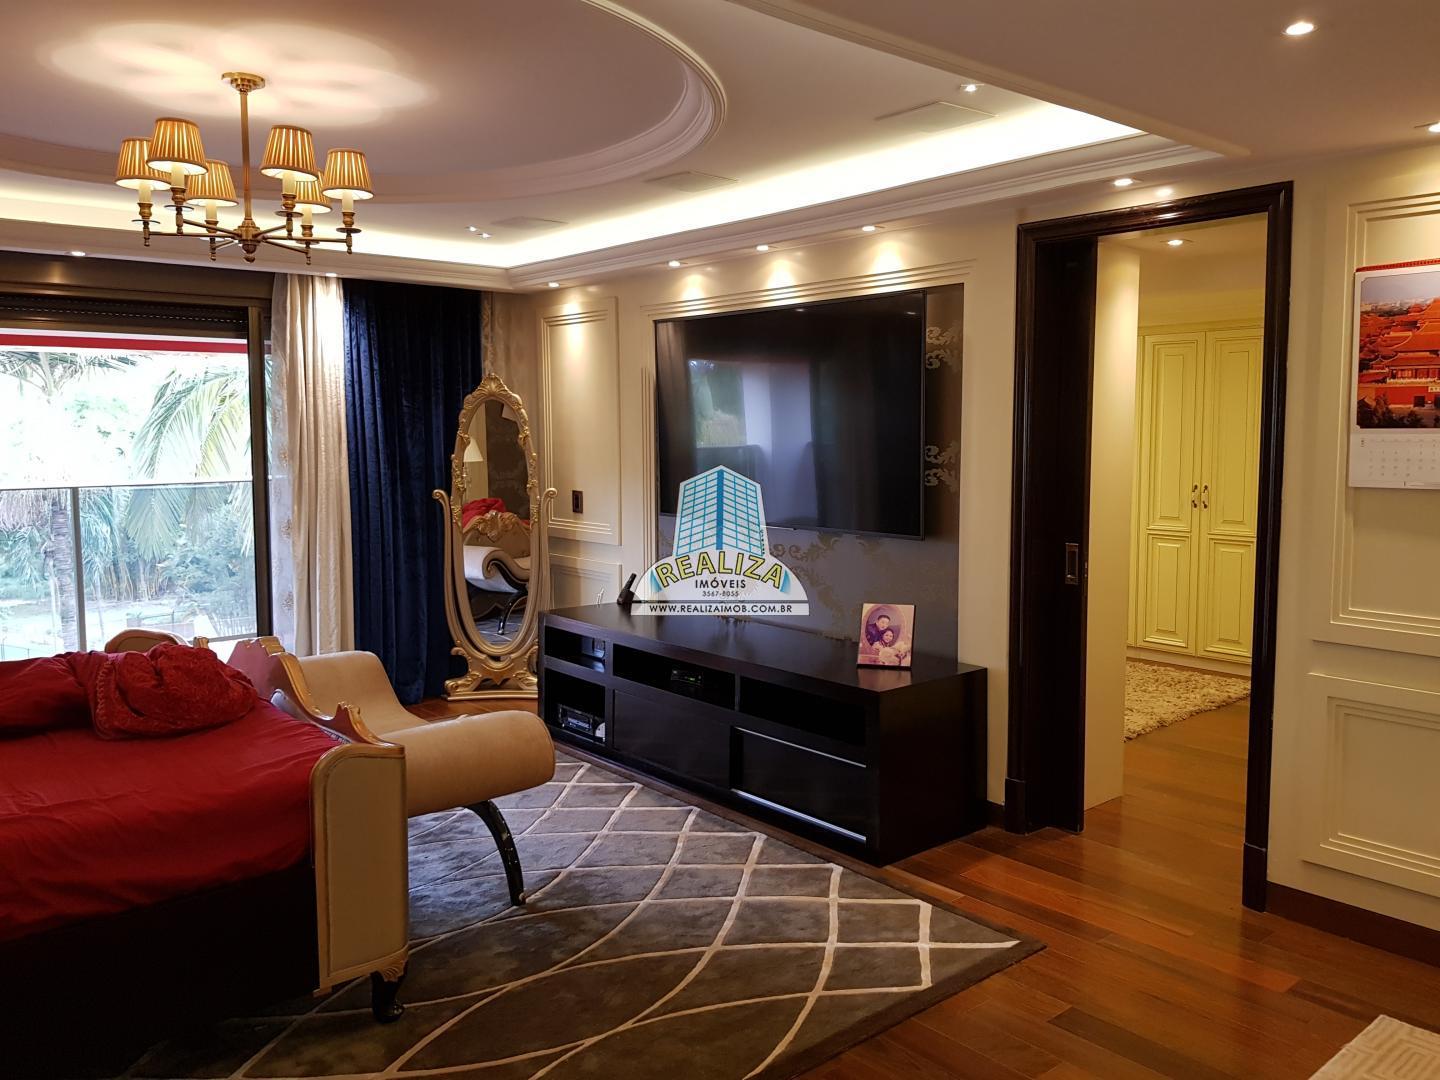 QL 06 Ponta de picolé mansão luxo mobiliada com elevador, novíssima, construída há cinco anos, aceita permuta e financiamento.